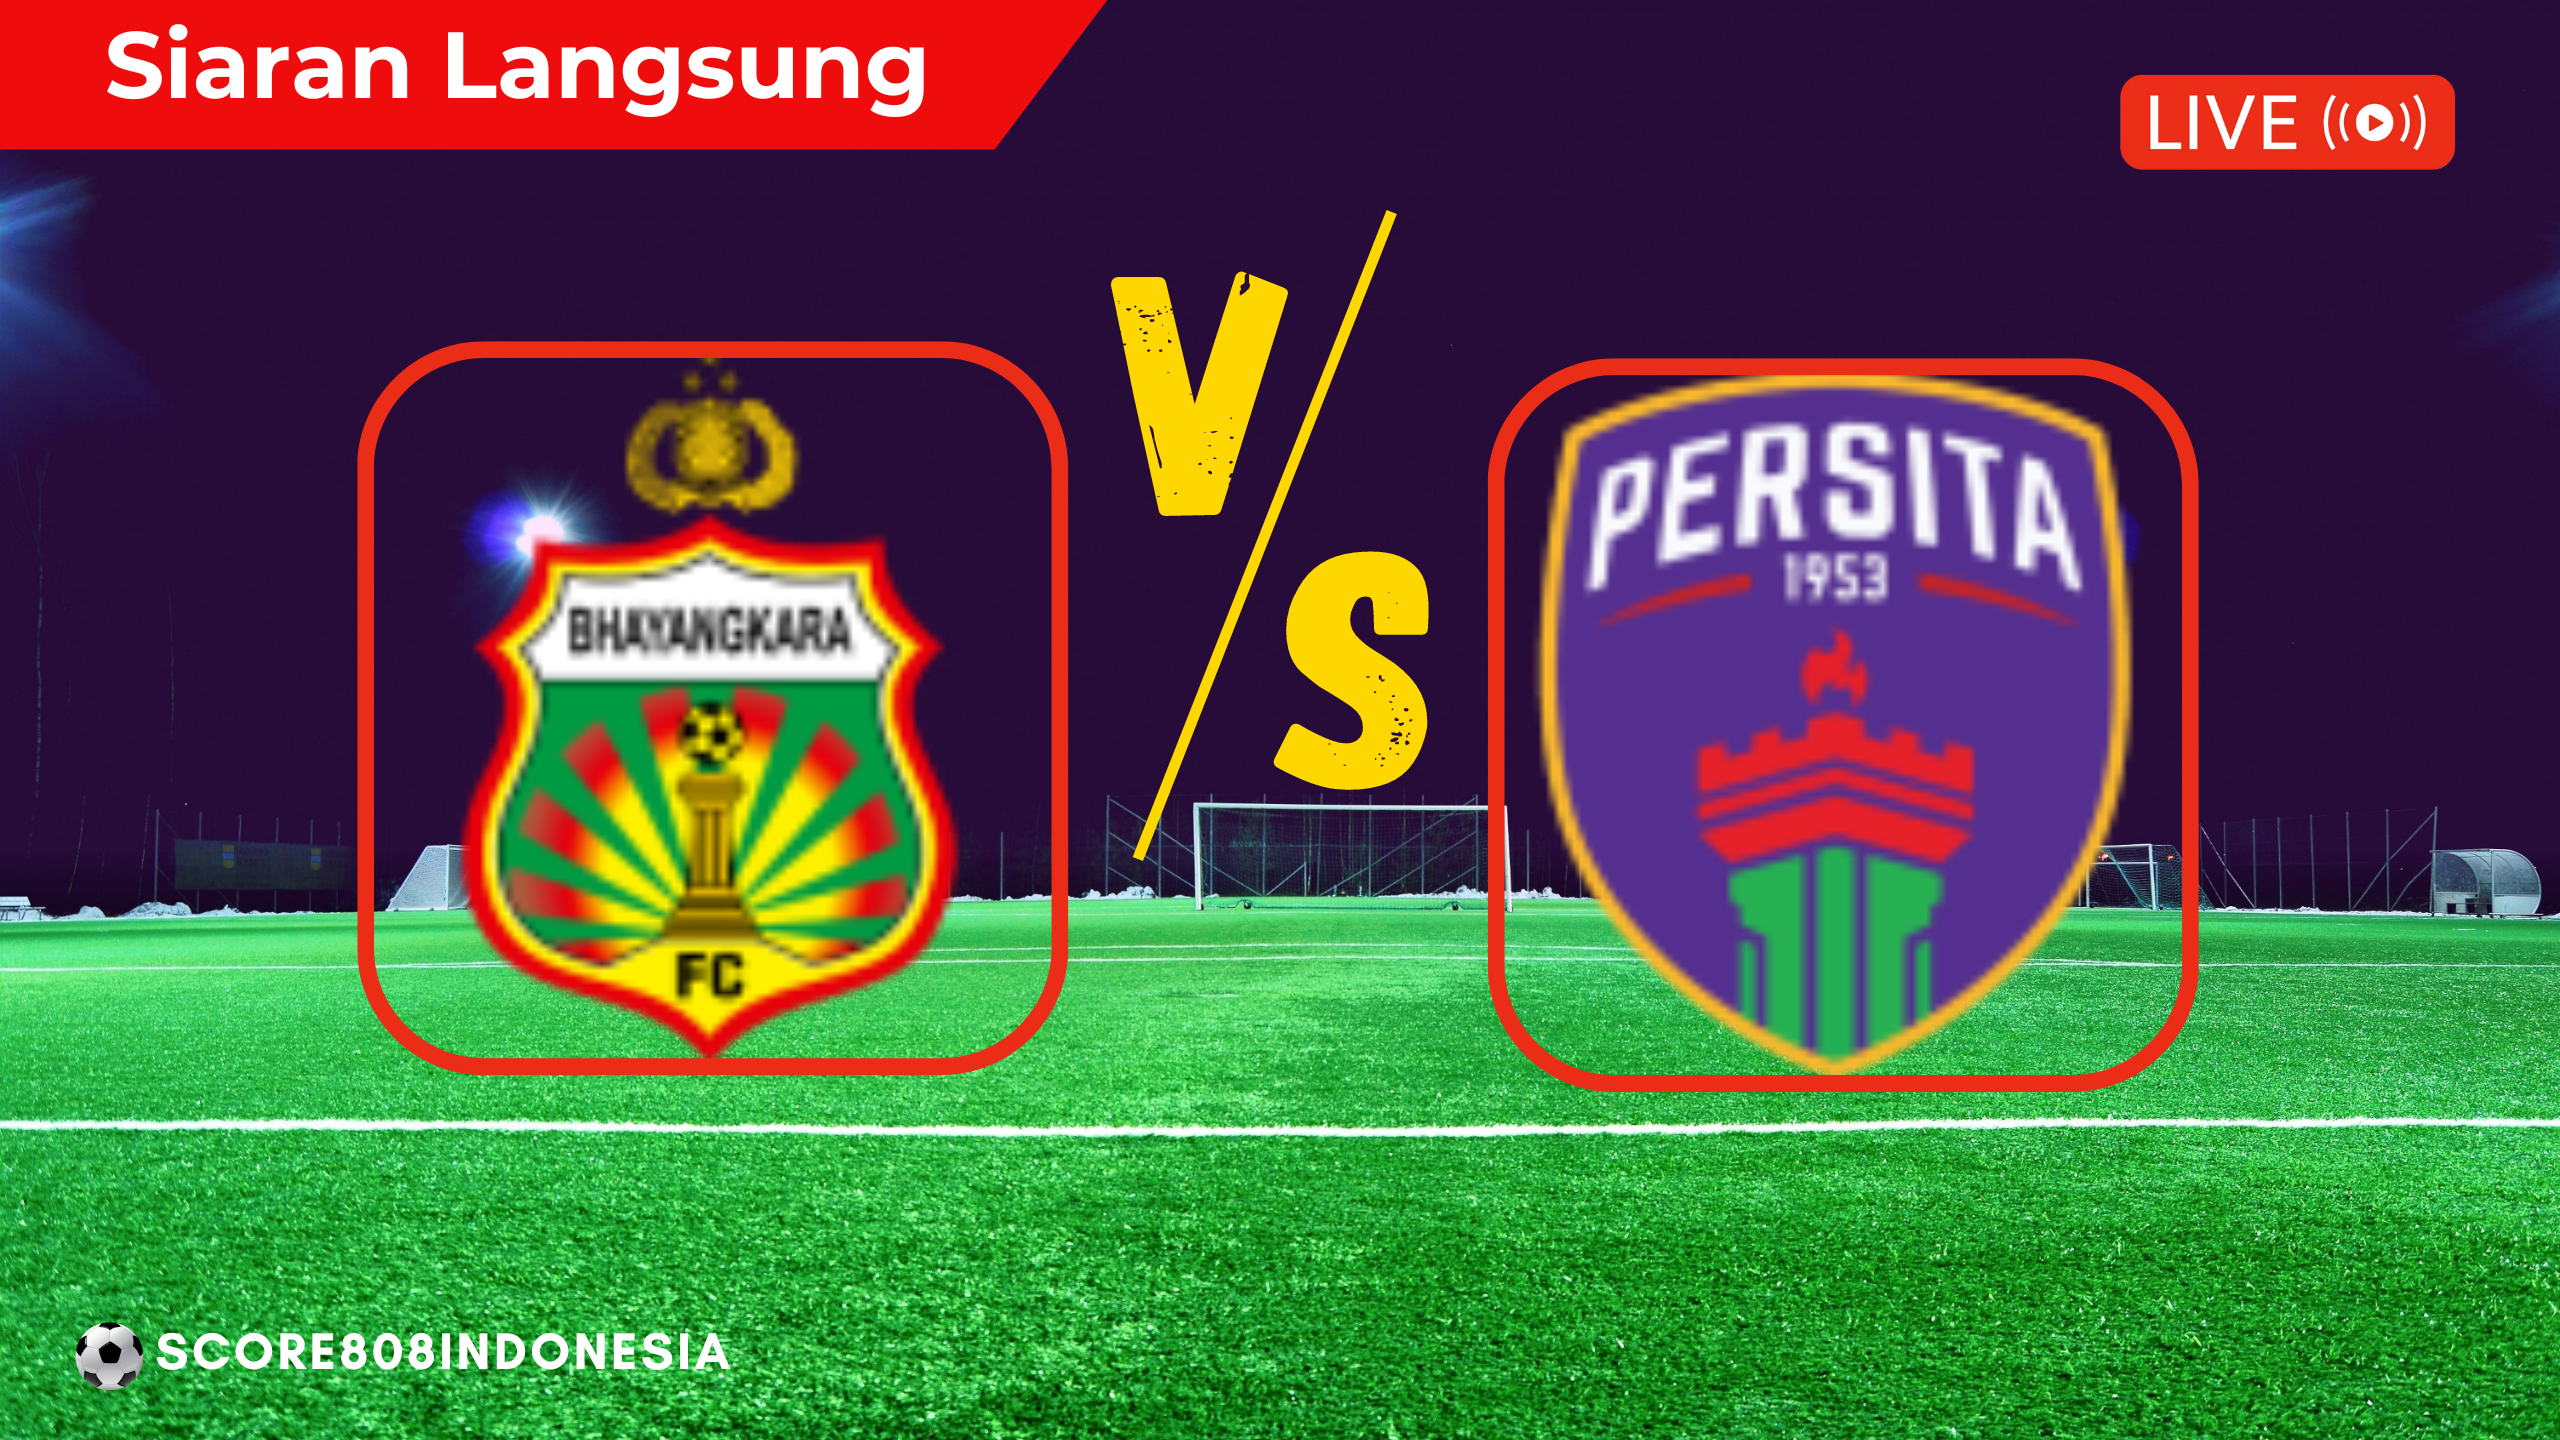 FC Bhayangkara vs Persita